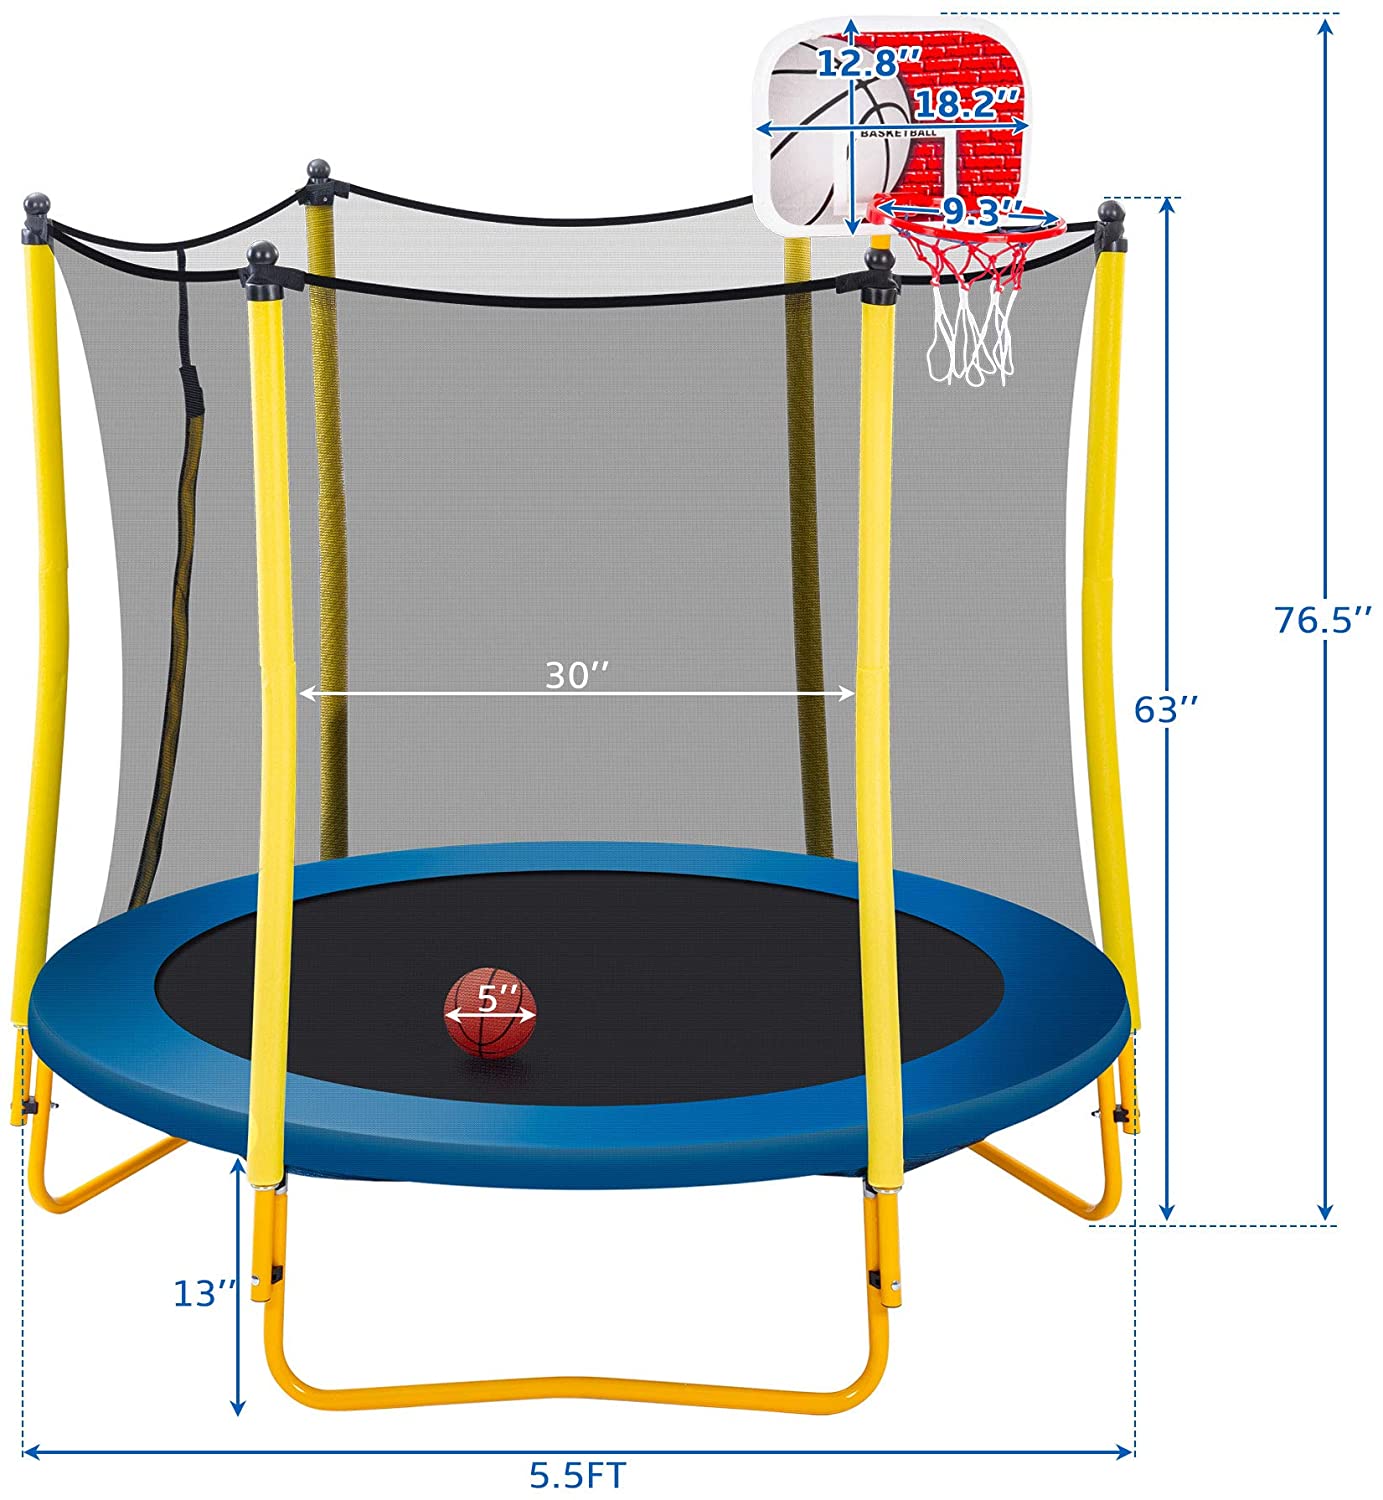 Trampolín para niños con aro de baloncesto, pelota de goma y recinto de seguridad red